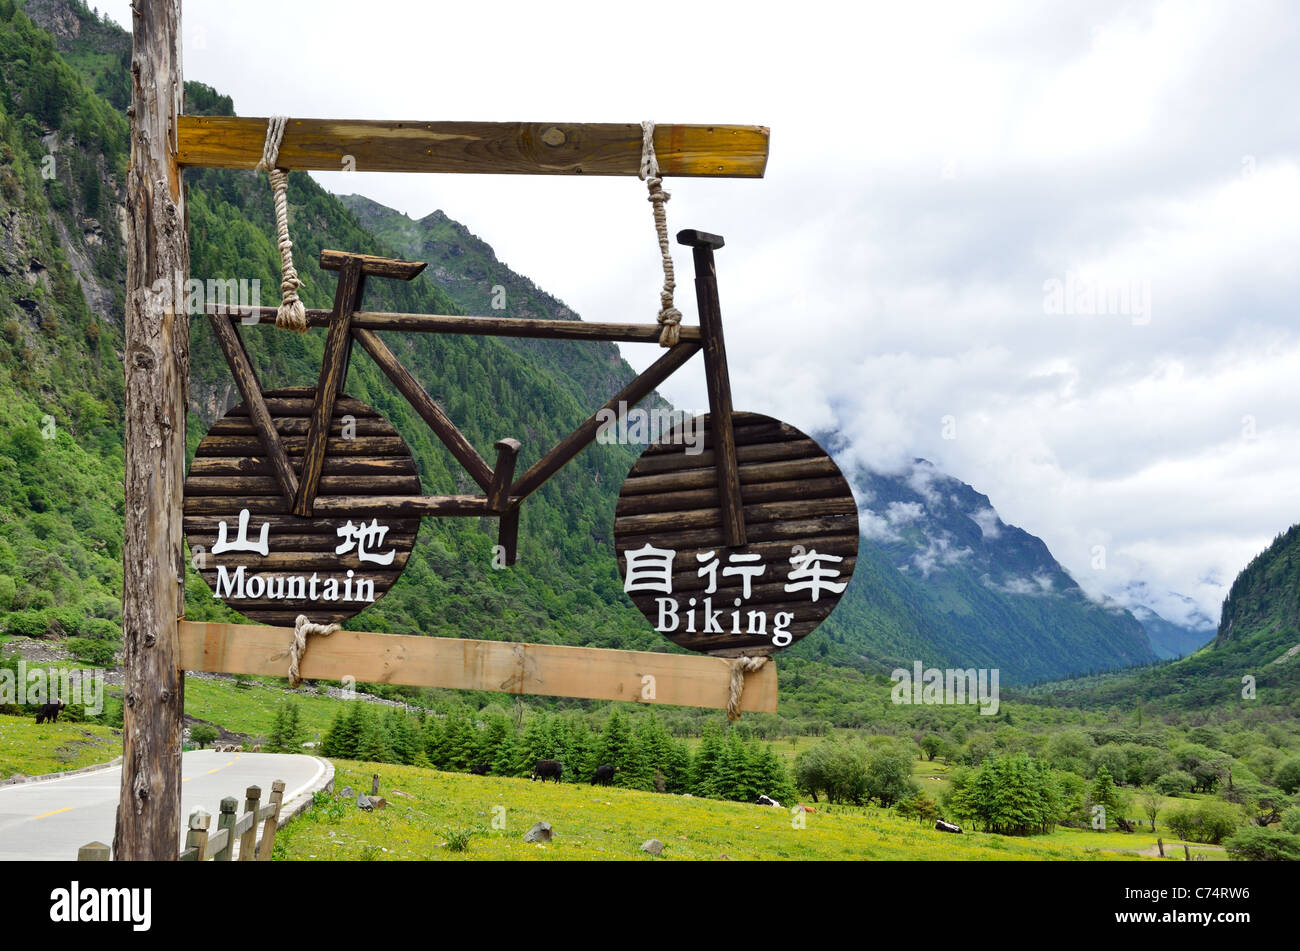 Melden Sie in Chinesisch und Englisch für Mountainbike-Touren im Naturreservat Sigunian Shan. Sichuan, China. Stockfoto